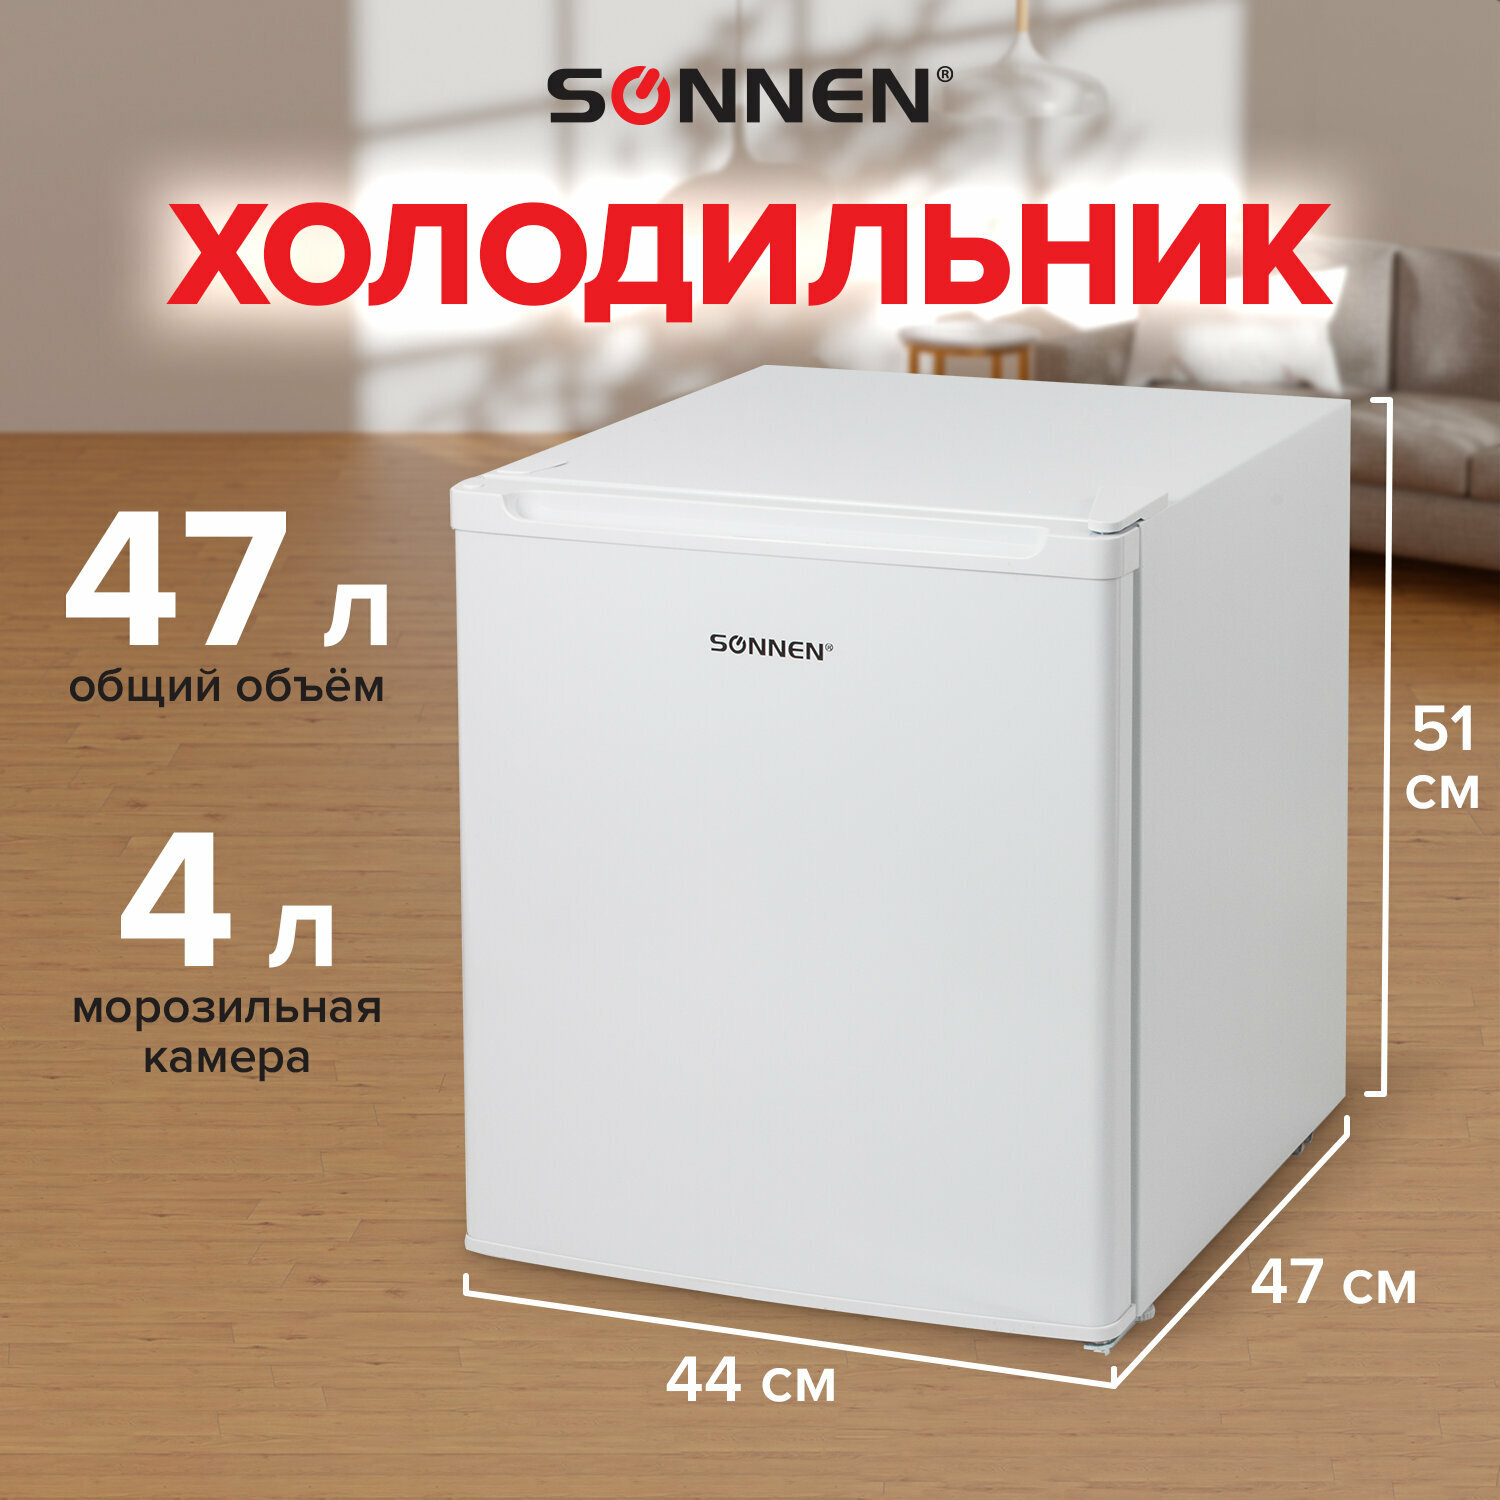 Холодильник маленький однокамерный компактный Sonnen DF-1-06, объем 47 л, для дома/дачи/офиса, морозильная камера 4 л, 44х47х51 см, белый, 454213